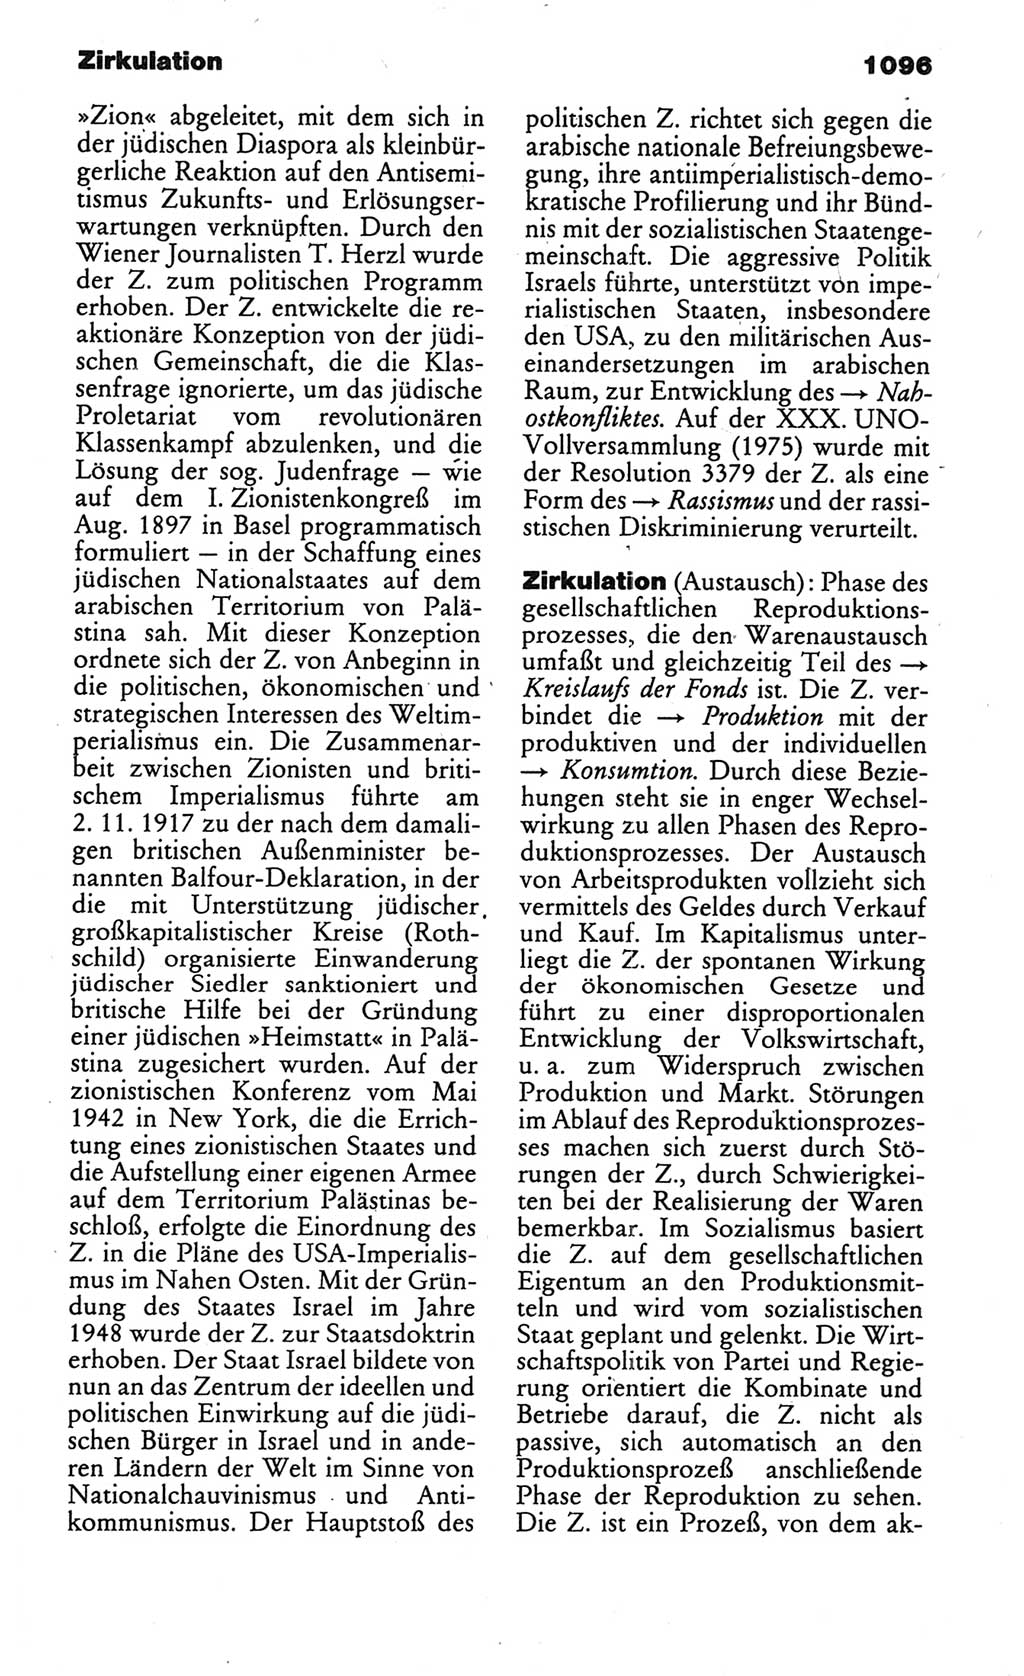 Kleines politisches Wörterbuch [Deutsche Demokratische Republik (DDR)] 1986, Seite 1096 (Kl. pol. Wb. DDR 1986, S. 1096)